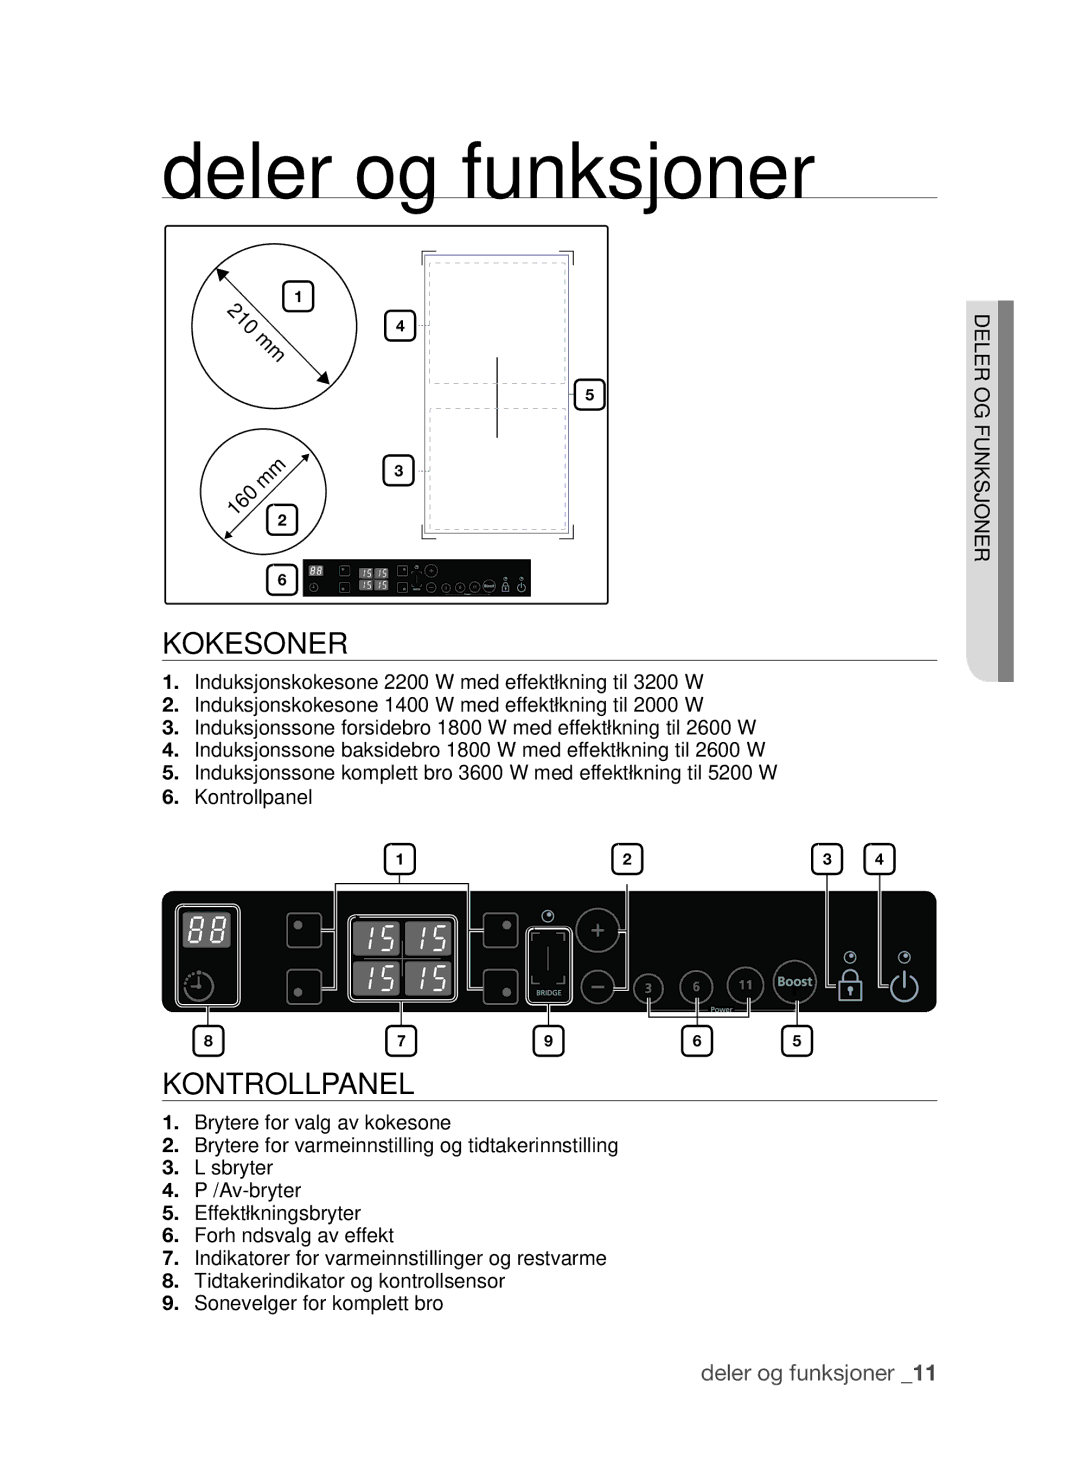 Samsung CTI613GIN/XEO, CTI613GIN/XEE manual Deler og funksjoner, Kokesoner, Kontrollpanel 